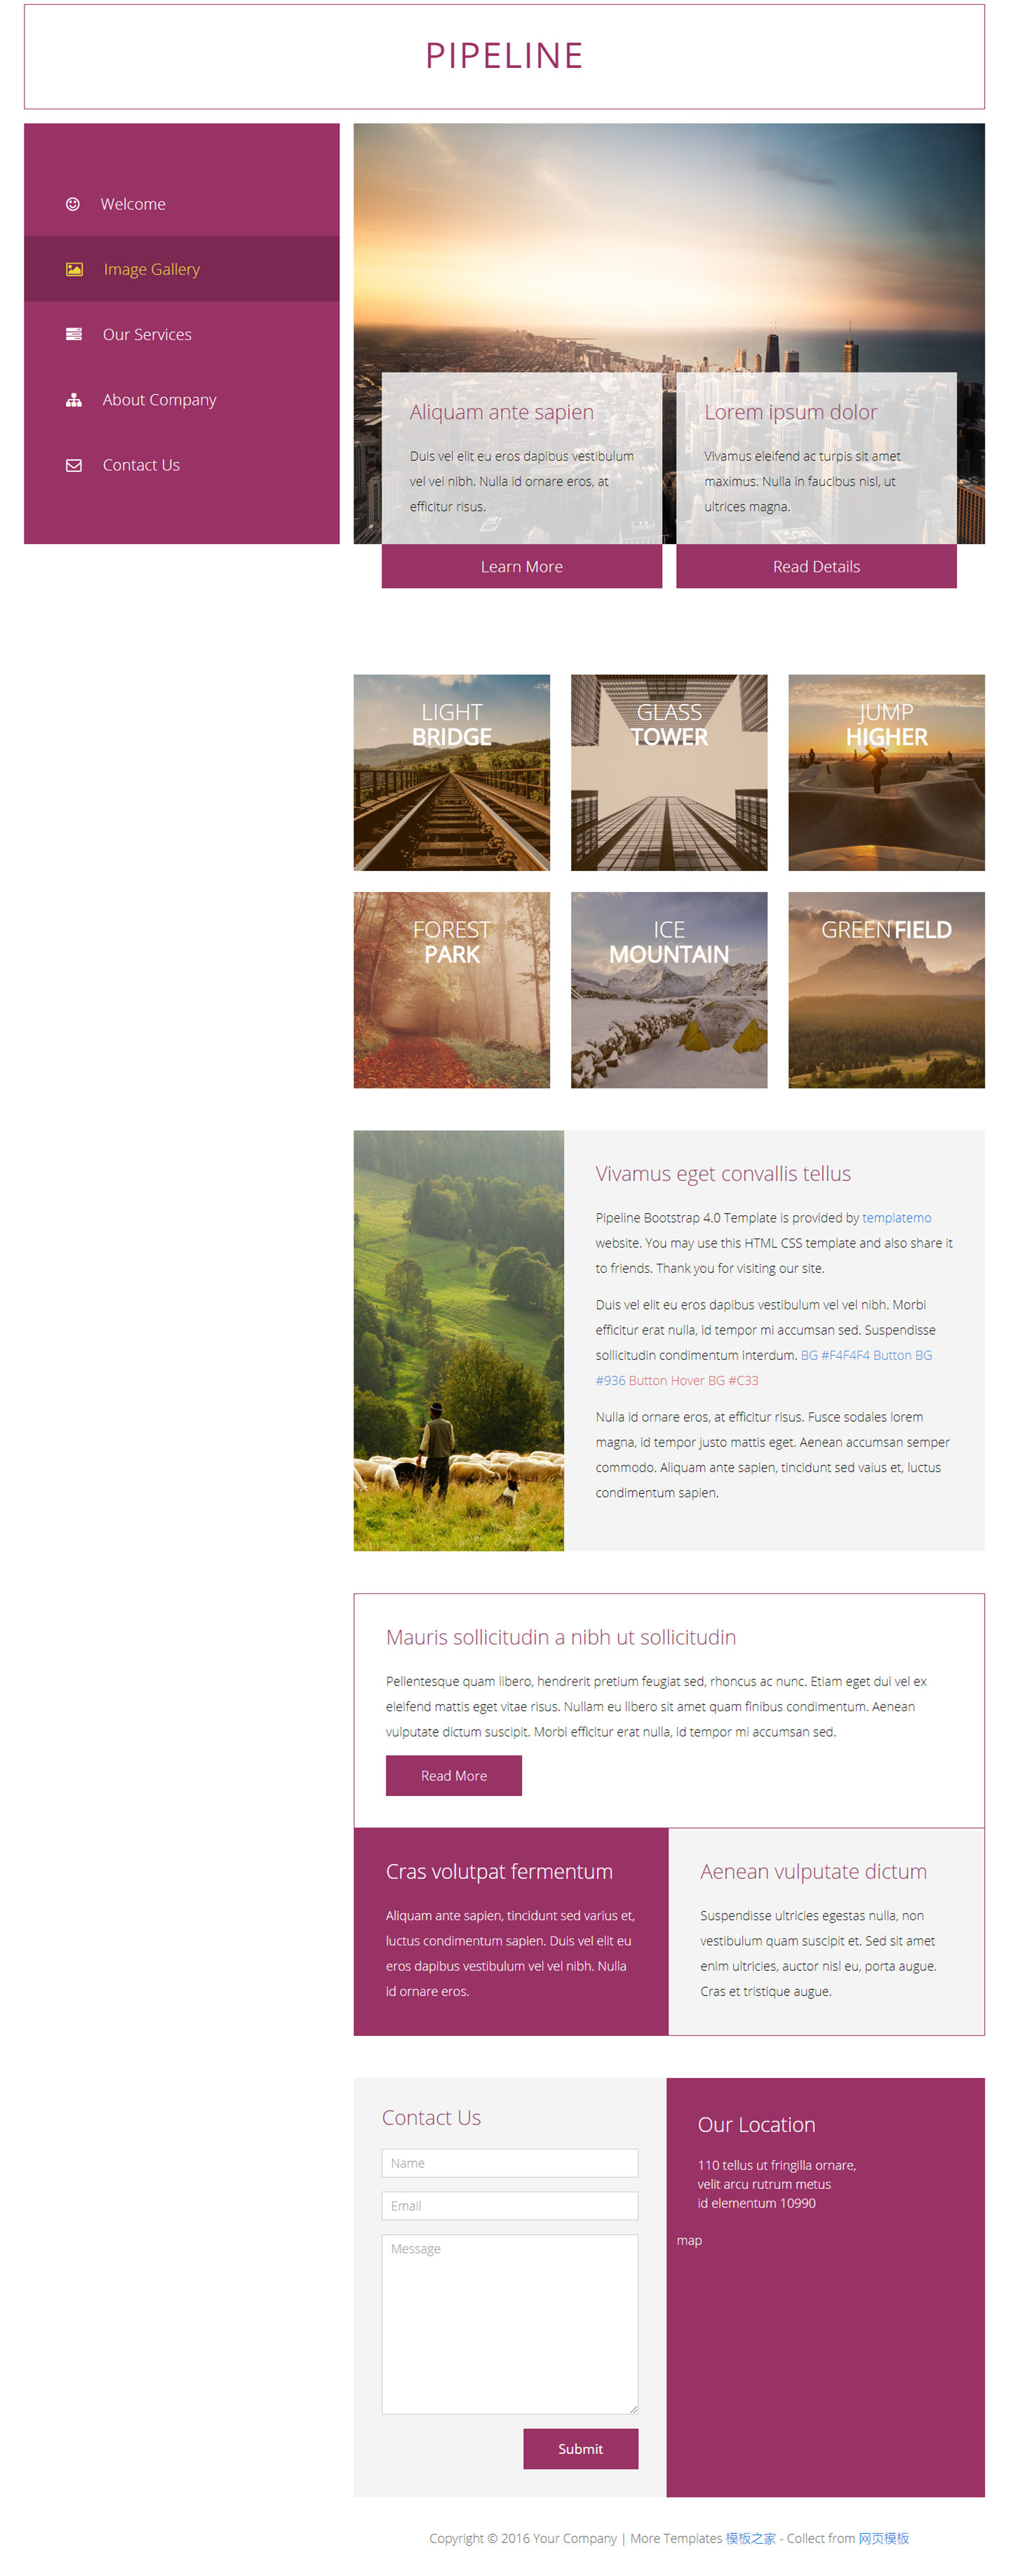 紫红色图片的相册作品展示网站模板下载